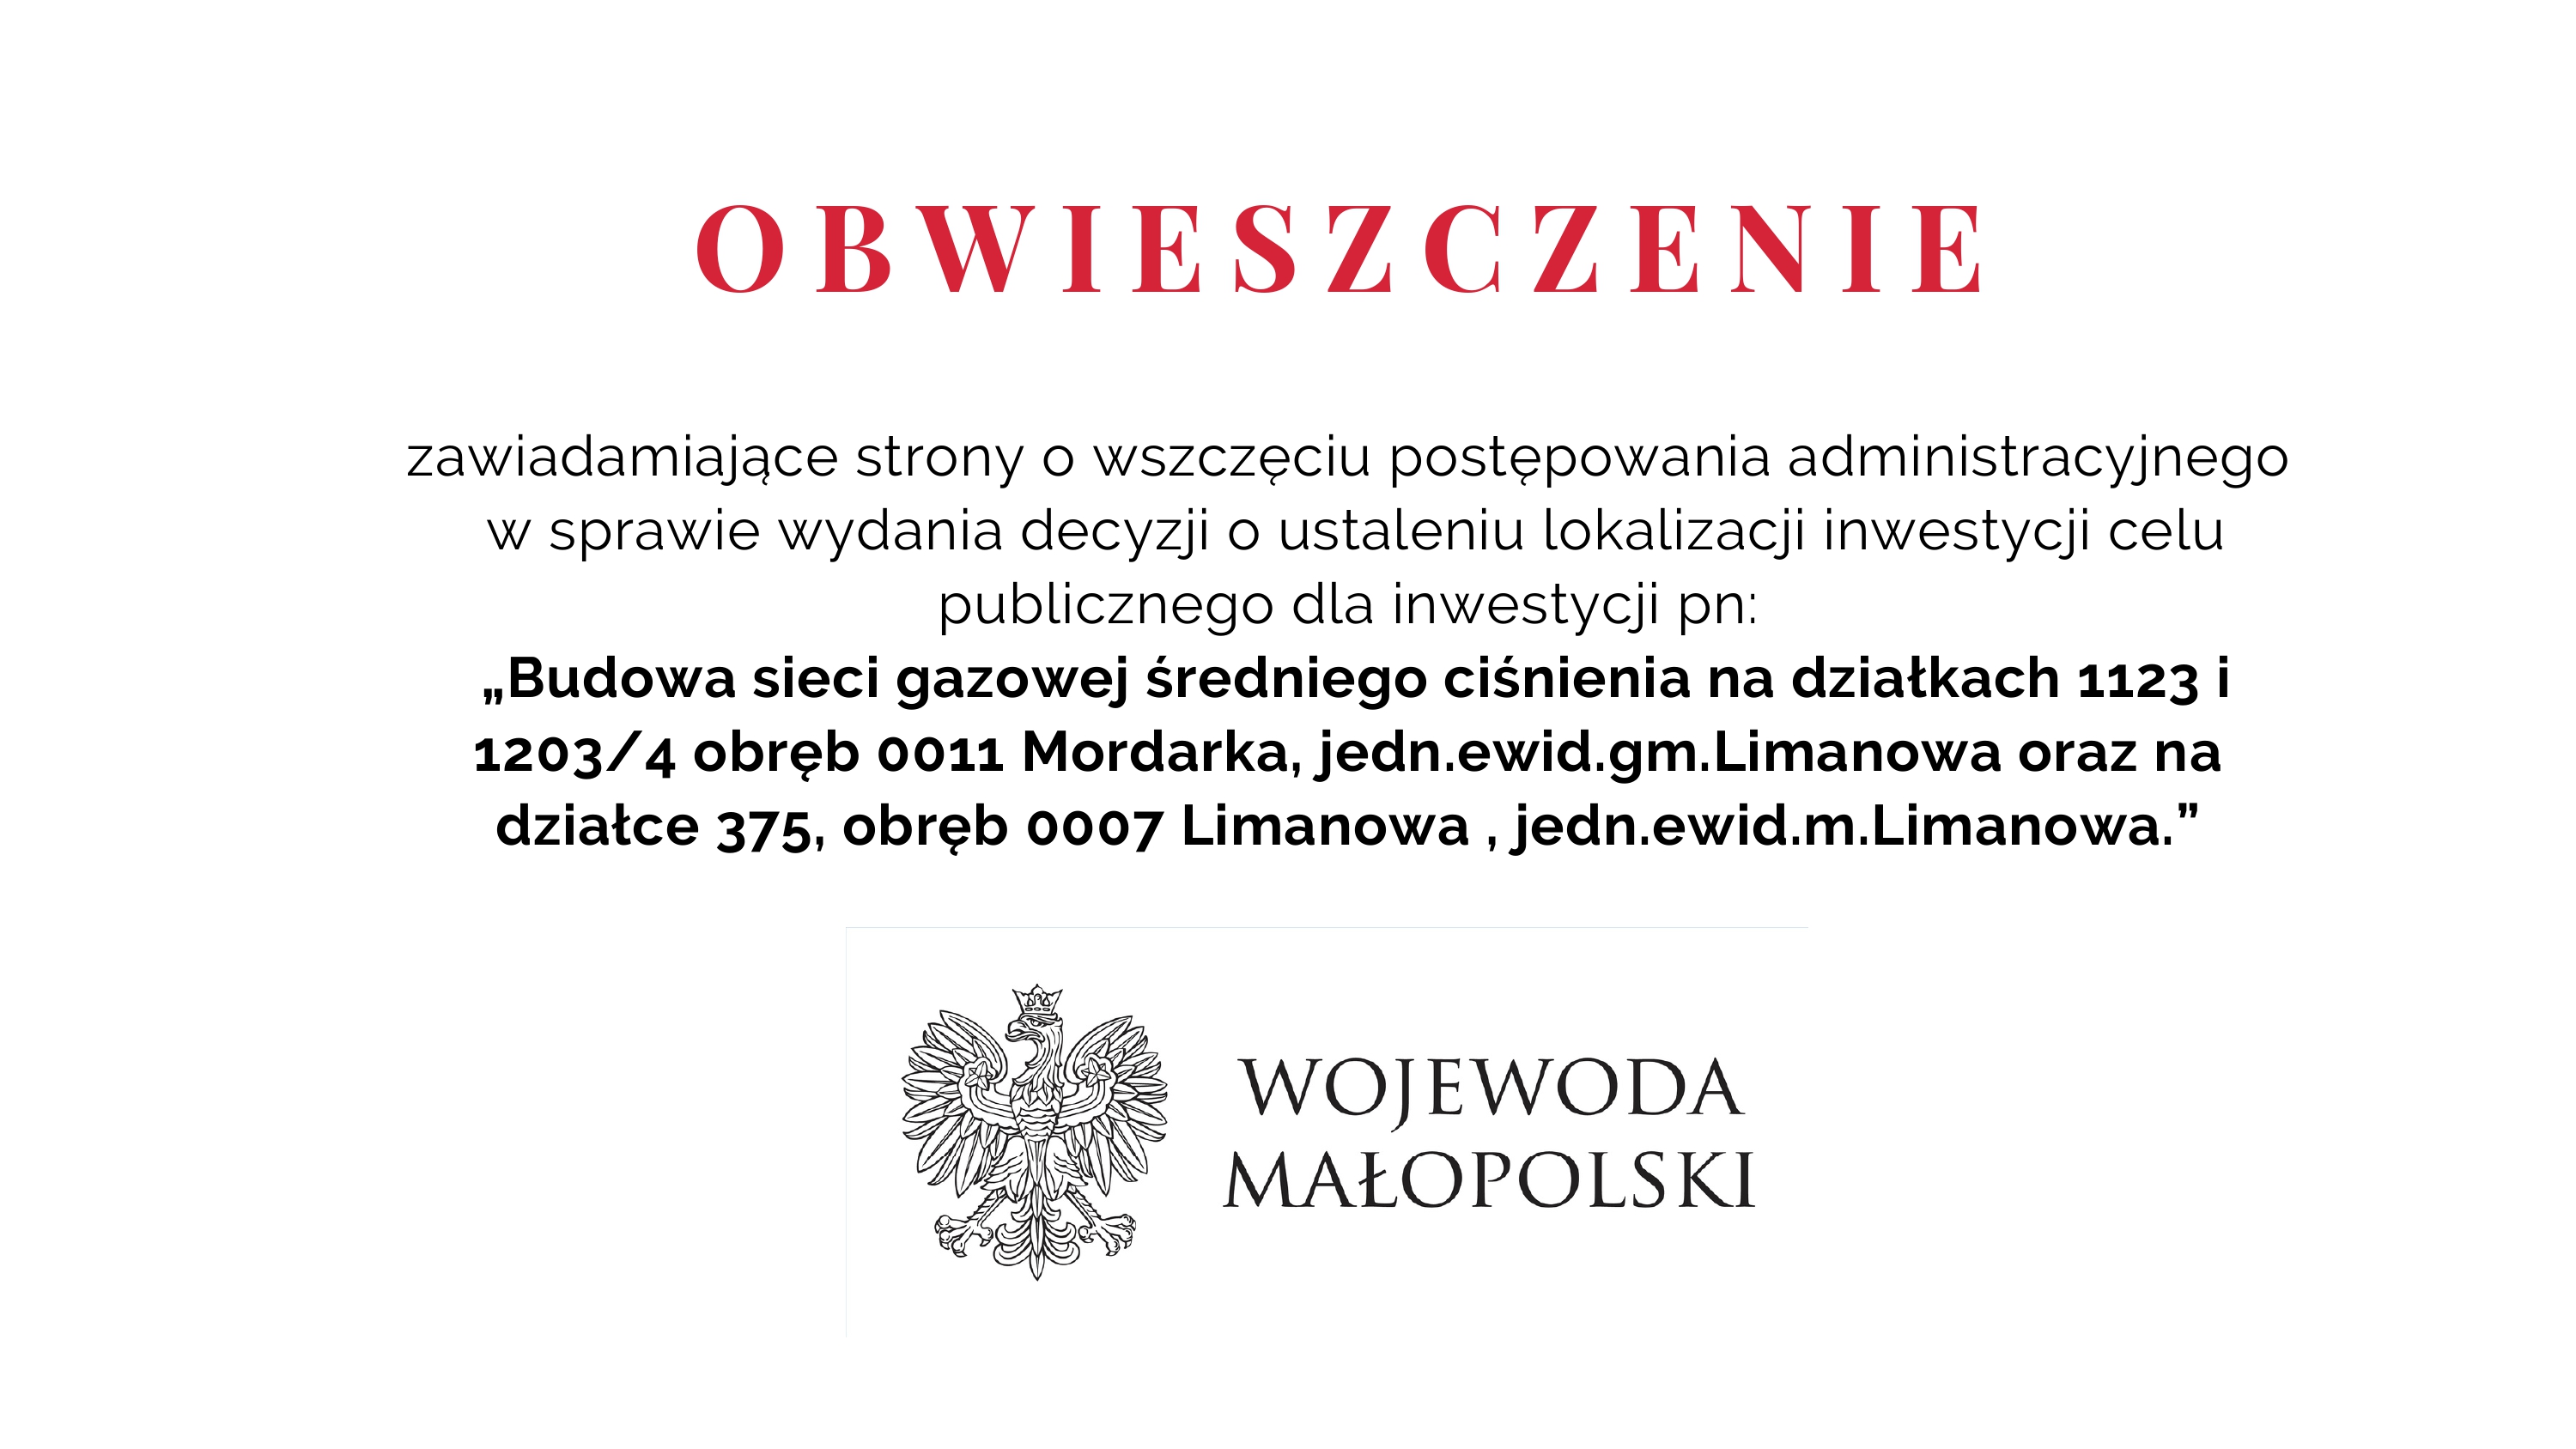 Obwieszczenie Wojewody Małopolskiego dot. budowy sieci gazowej - zdjęcie główne